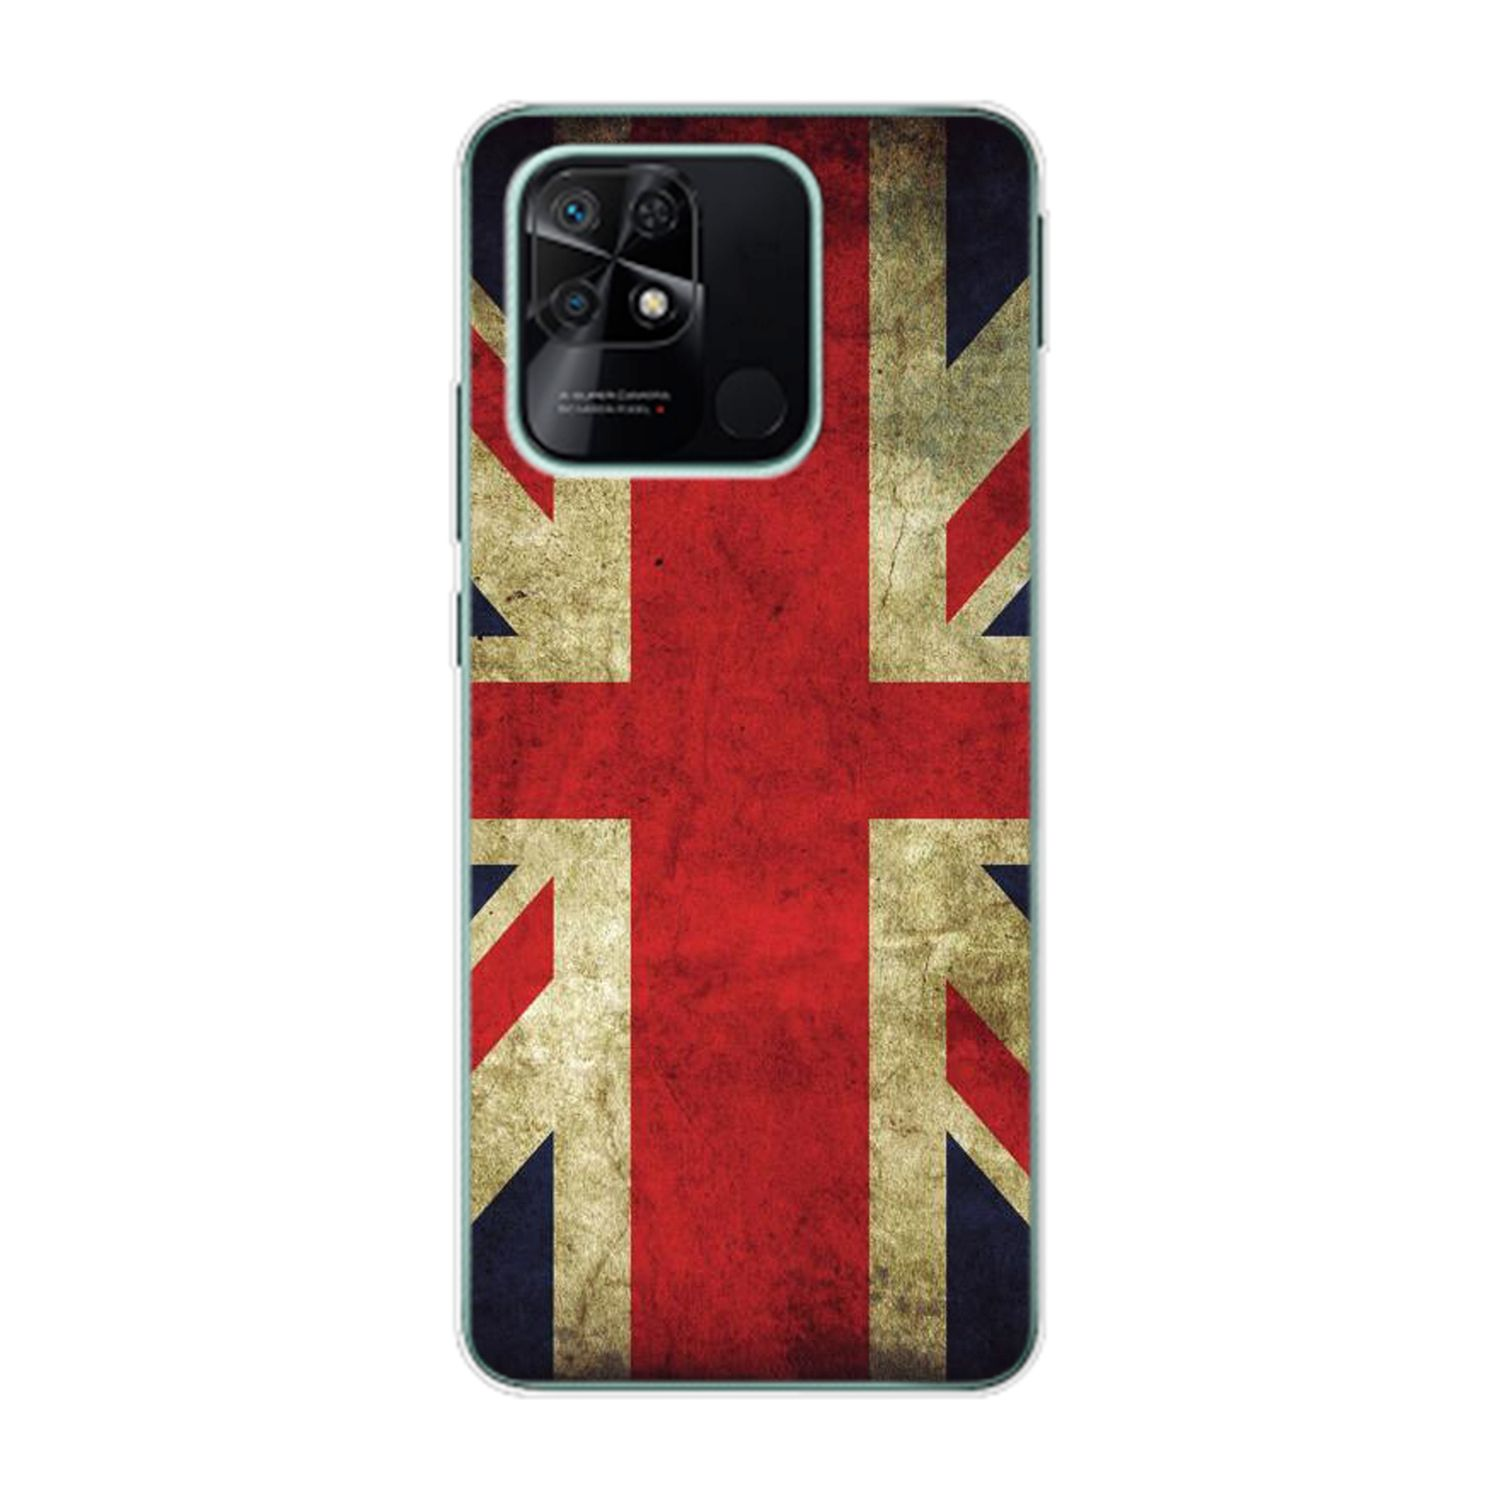 KÖNIG DESIGN Case, Redmi Flagge Backcover, Xiaomi, 10C, England